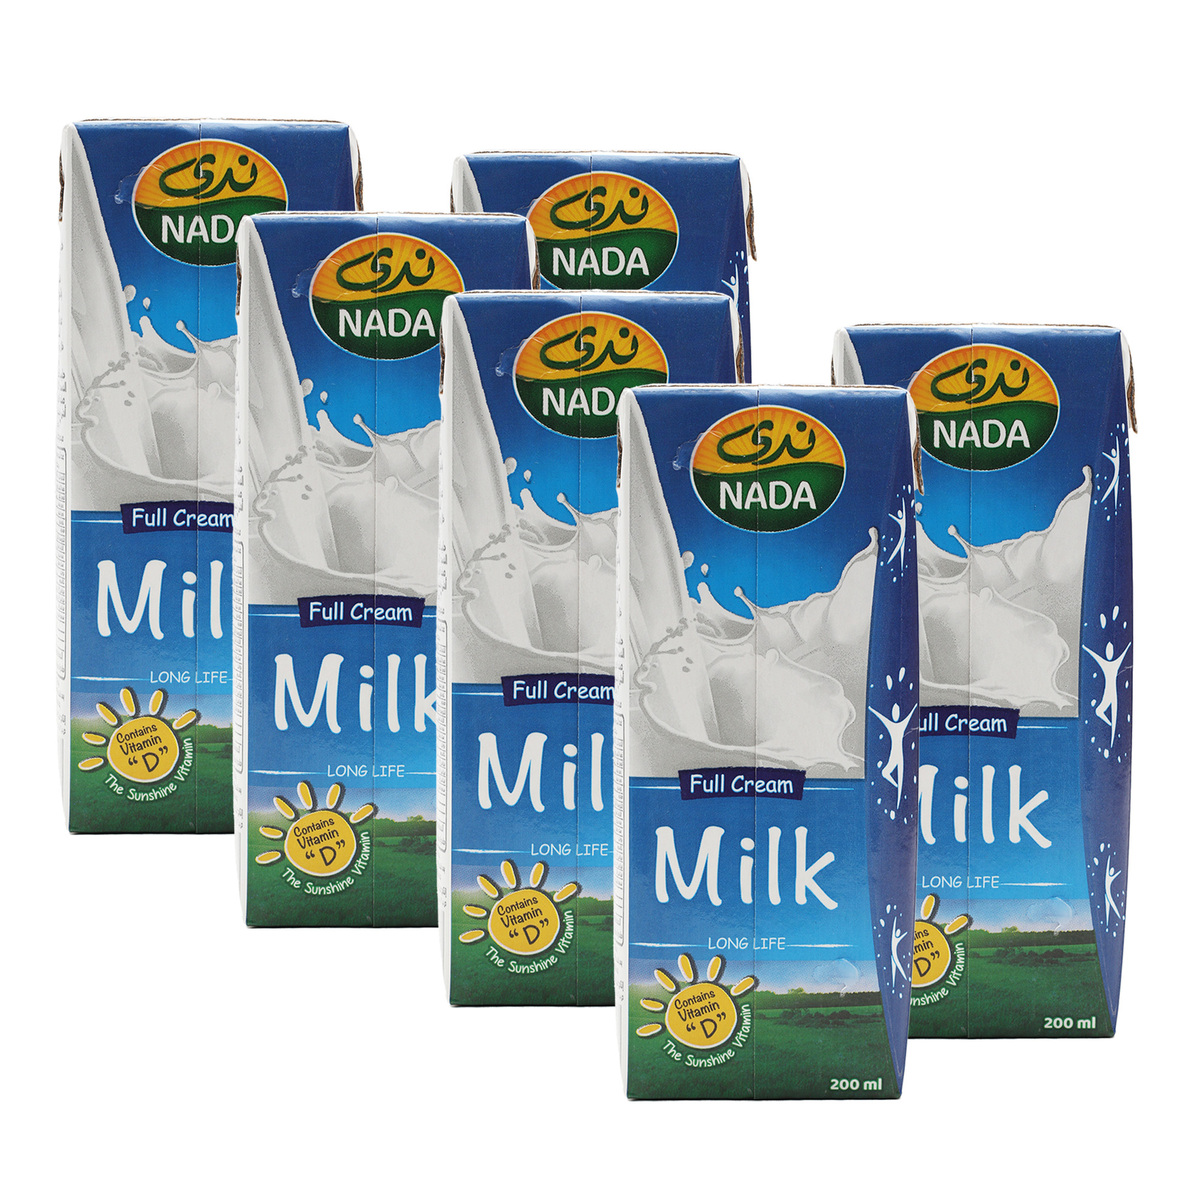 Nada UHT Milk Full Fat Vitamin D 200 ml